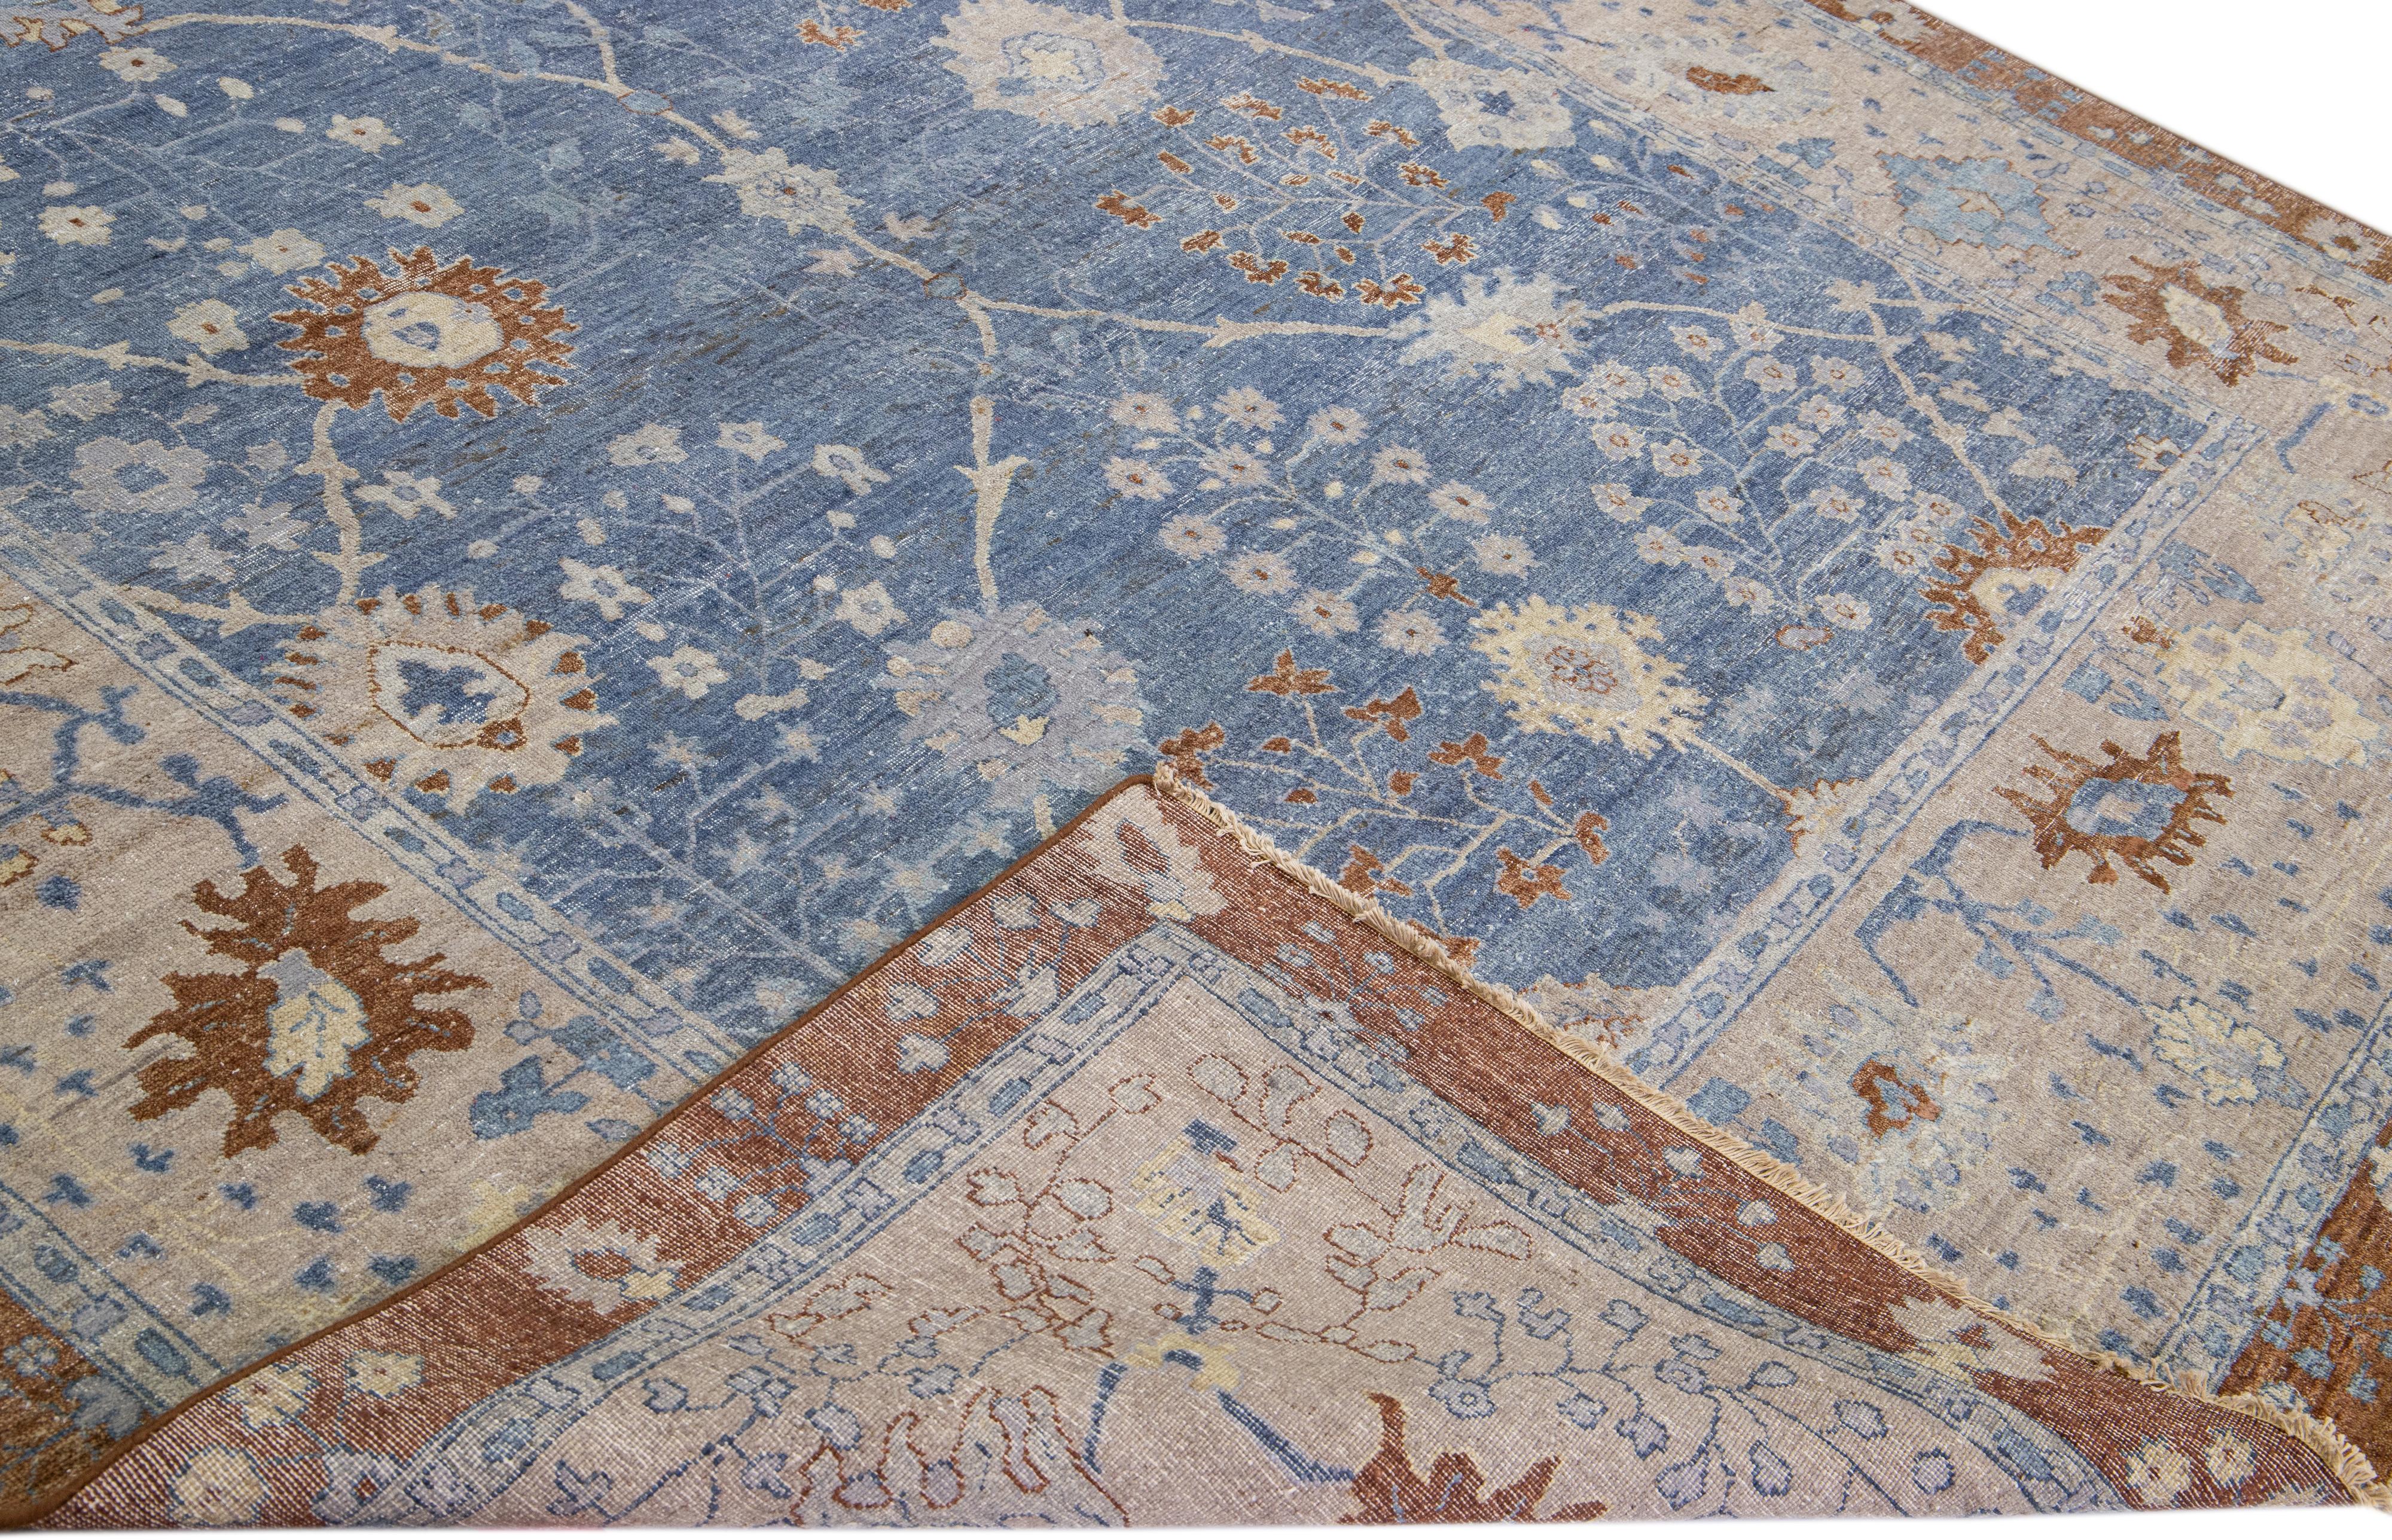 Die Artisan-Linie von Apadana ist eine elegante Möglichkeit, einem Raum eine auffallend antike Ästhetik zu verleihen. Diese Teppichserie ist ausgesprochen einzigartig und definiert das Aussehen eines antiken Teppichs neu. Jedes einzelne Stück